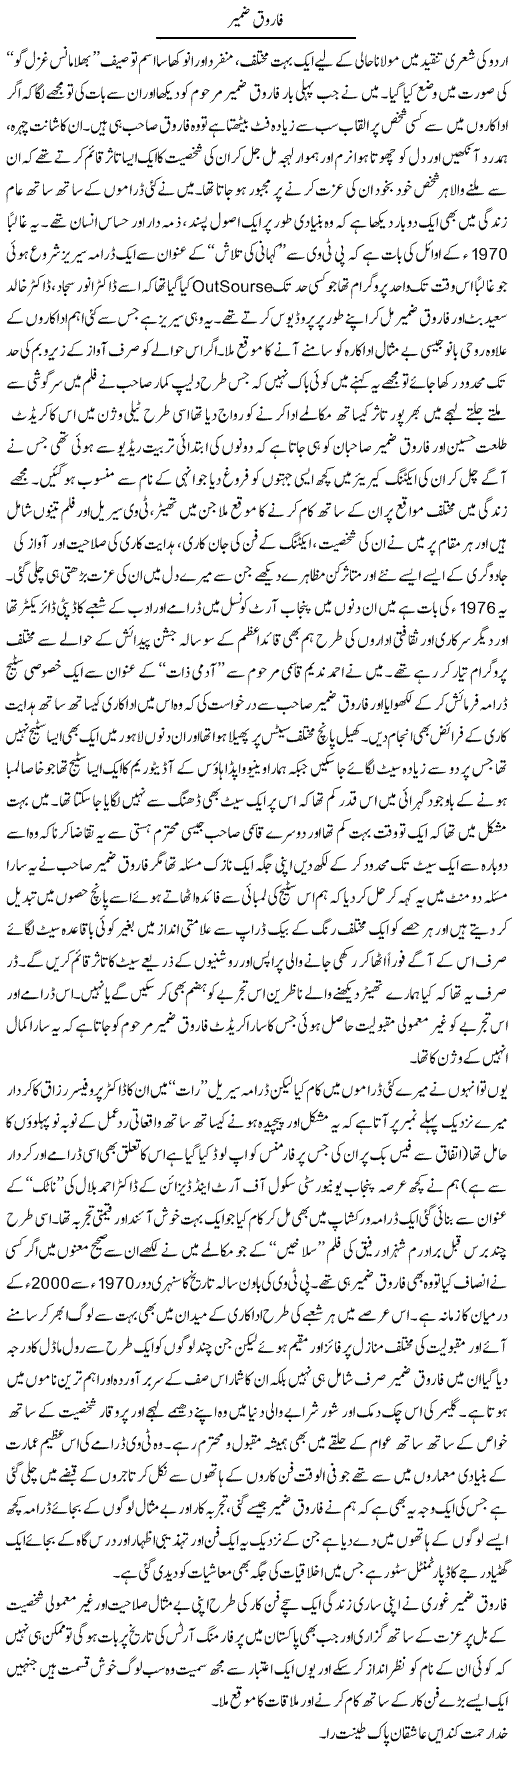 Farooq Zameer | Amjad Islam Amjad | Daily Urdu Columns